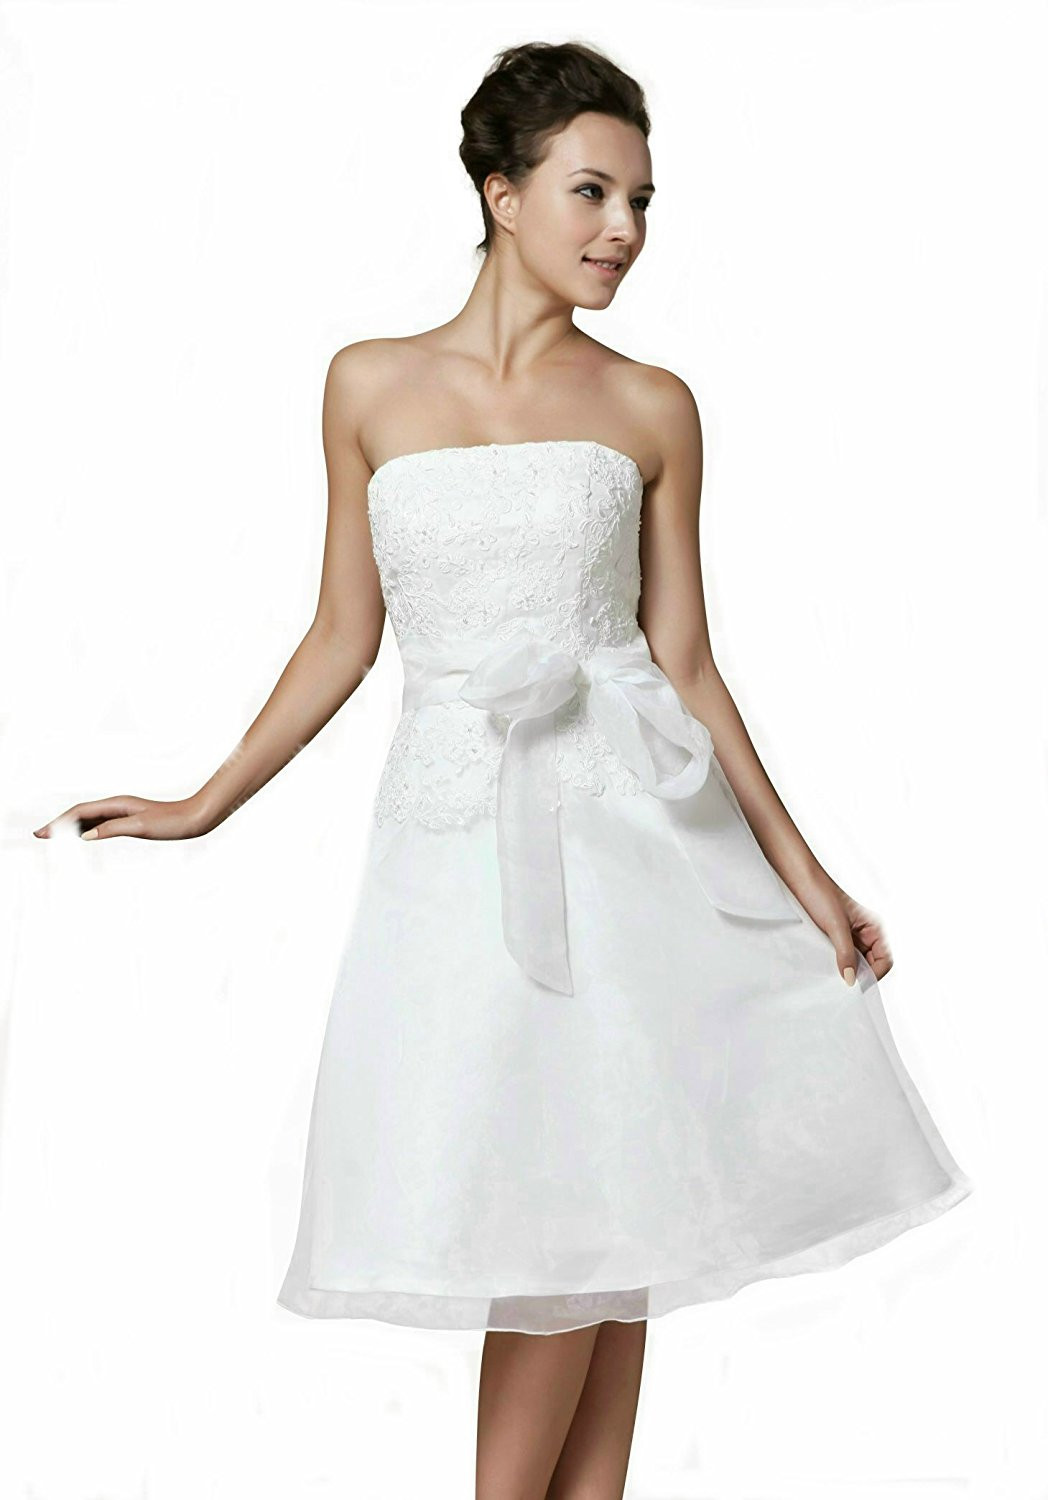 Hochzeitskleid Leihen
 Hochzeitskleid leihen paderborn – Dein neuer Kleiderfotoblog